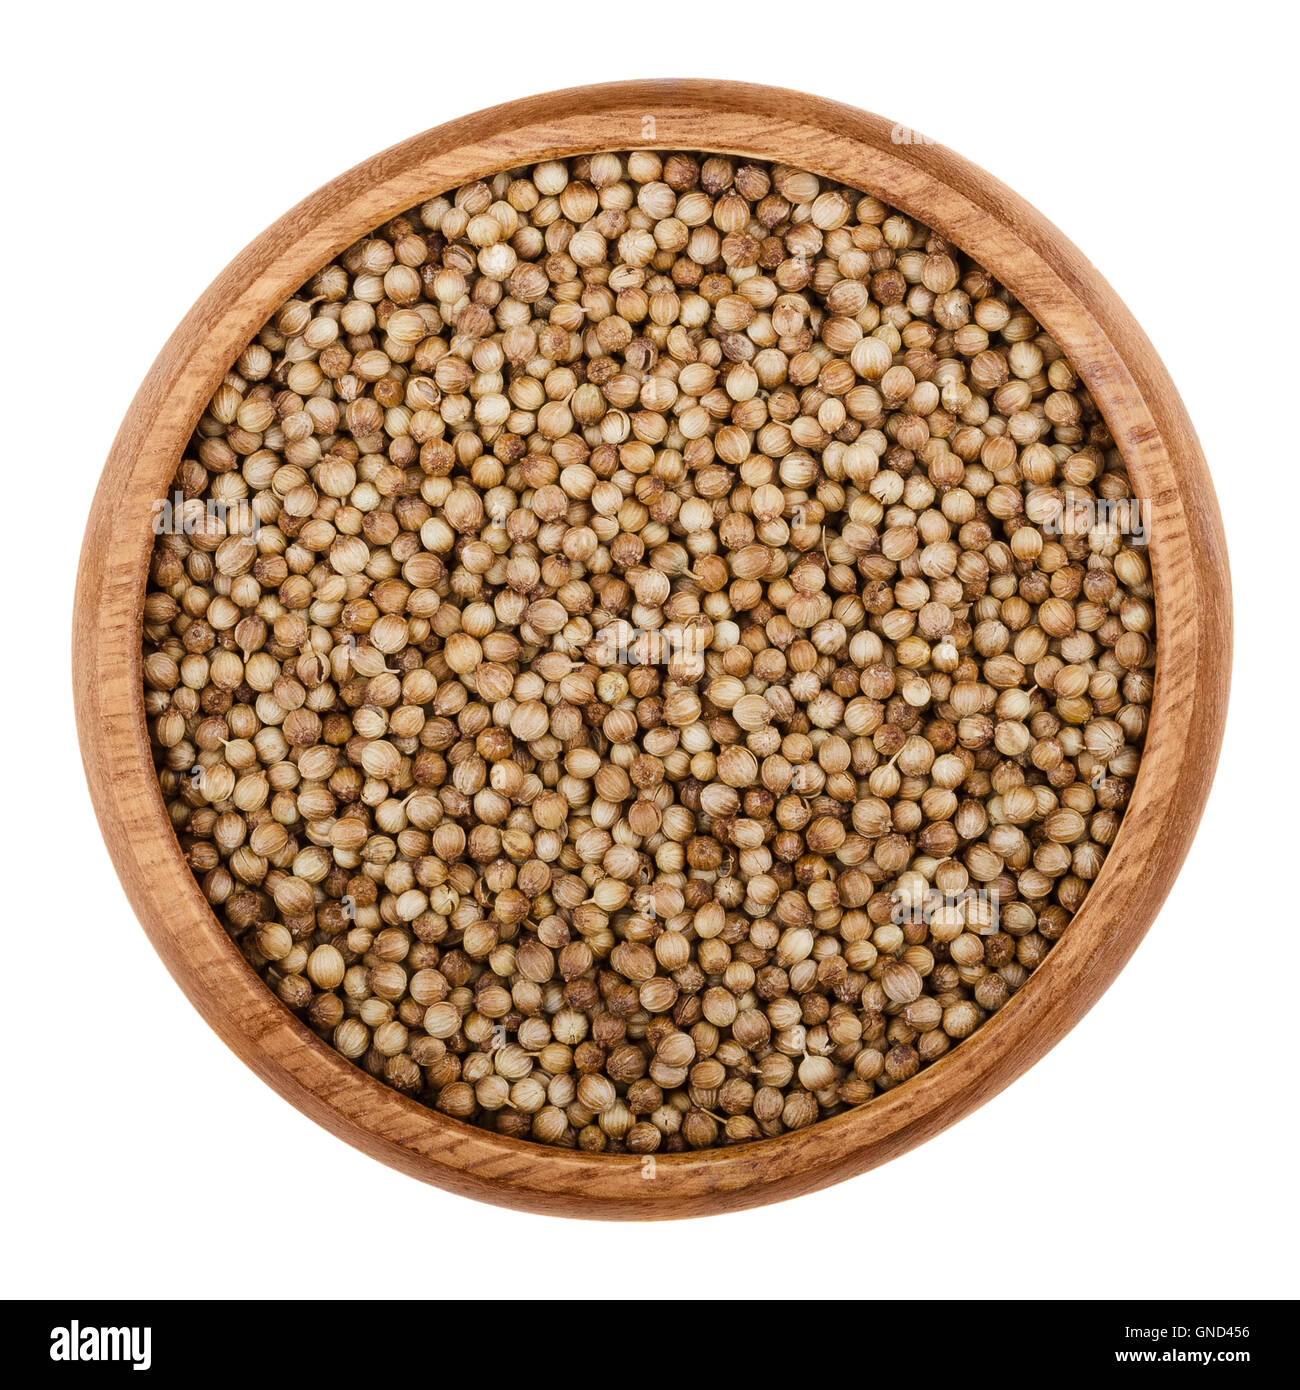 Les graines de coriandre séchée dans un bol en bois sur fond blanc. Fruits comestibles brown de Coriandrum sativum, également de coriandre. Banque D'Images